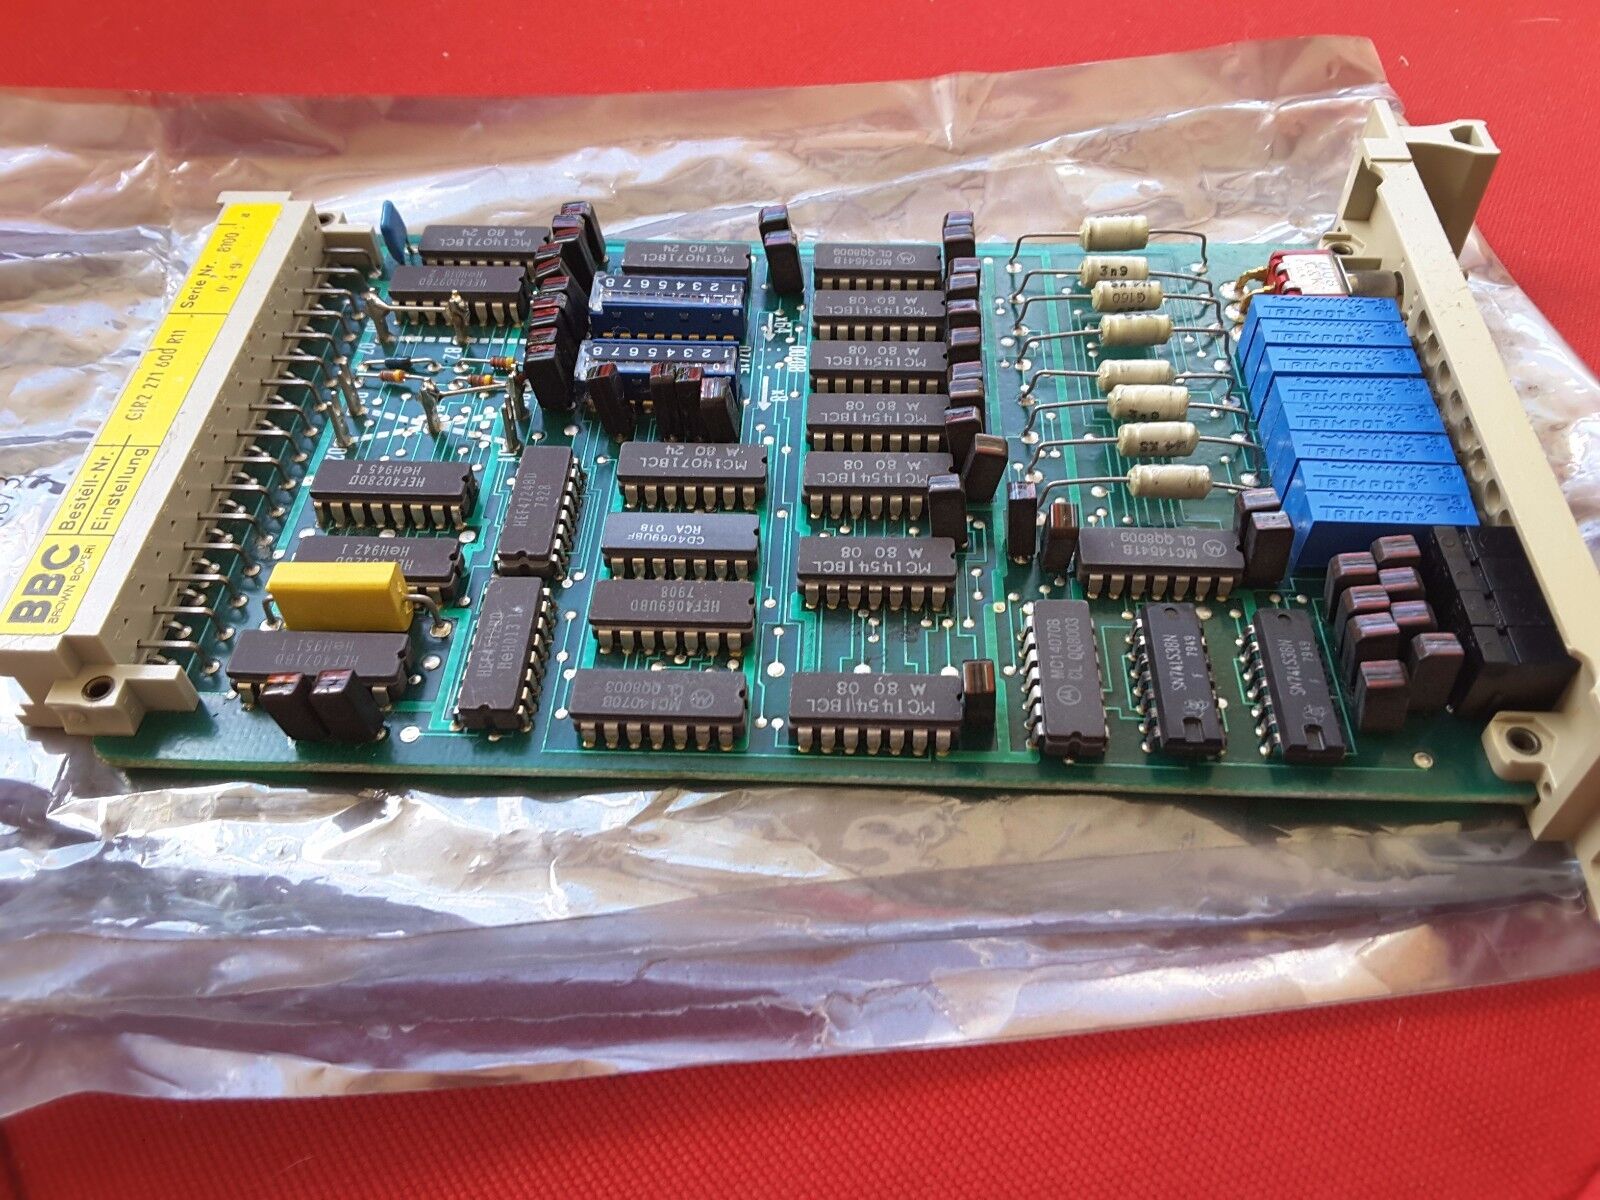  brown boveri GJR2271600r11 circuit board used RARE $299